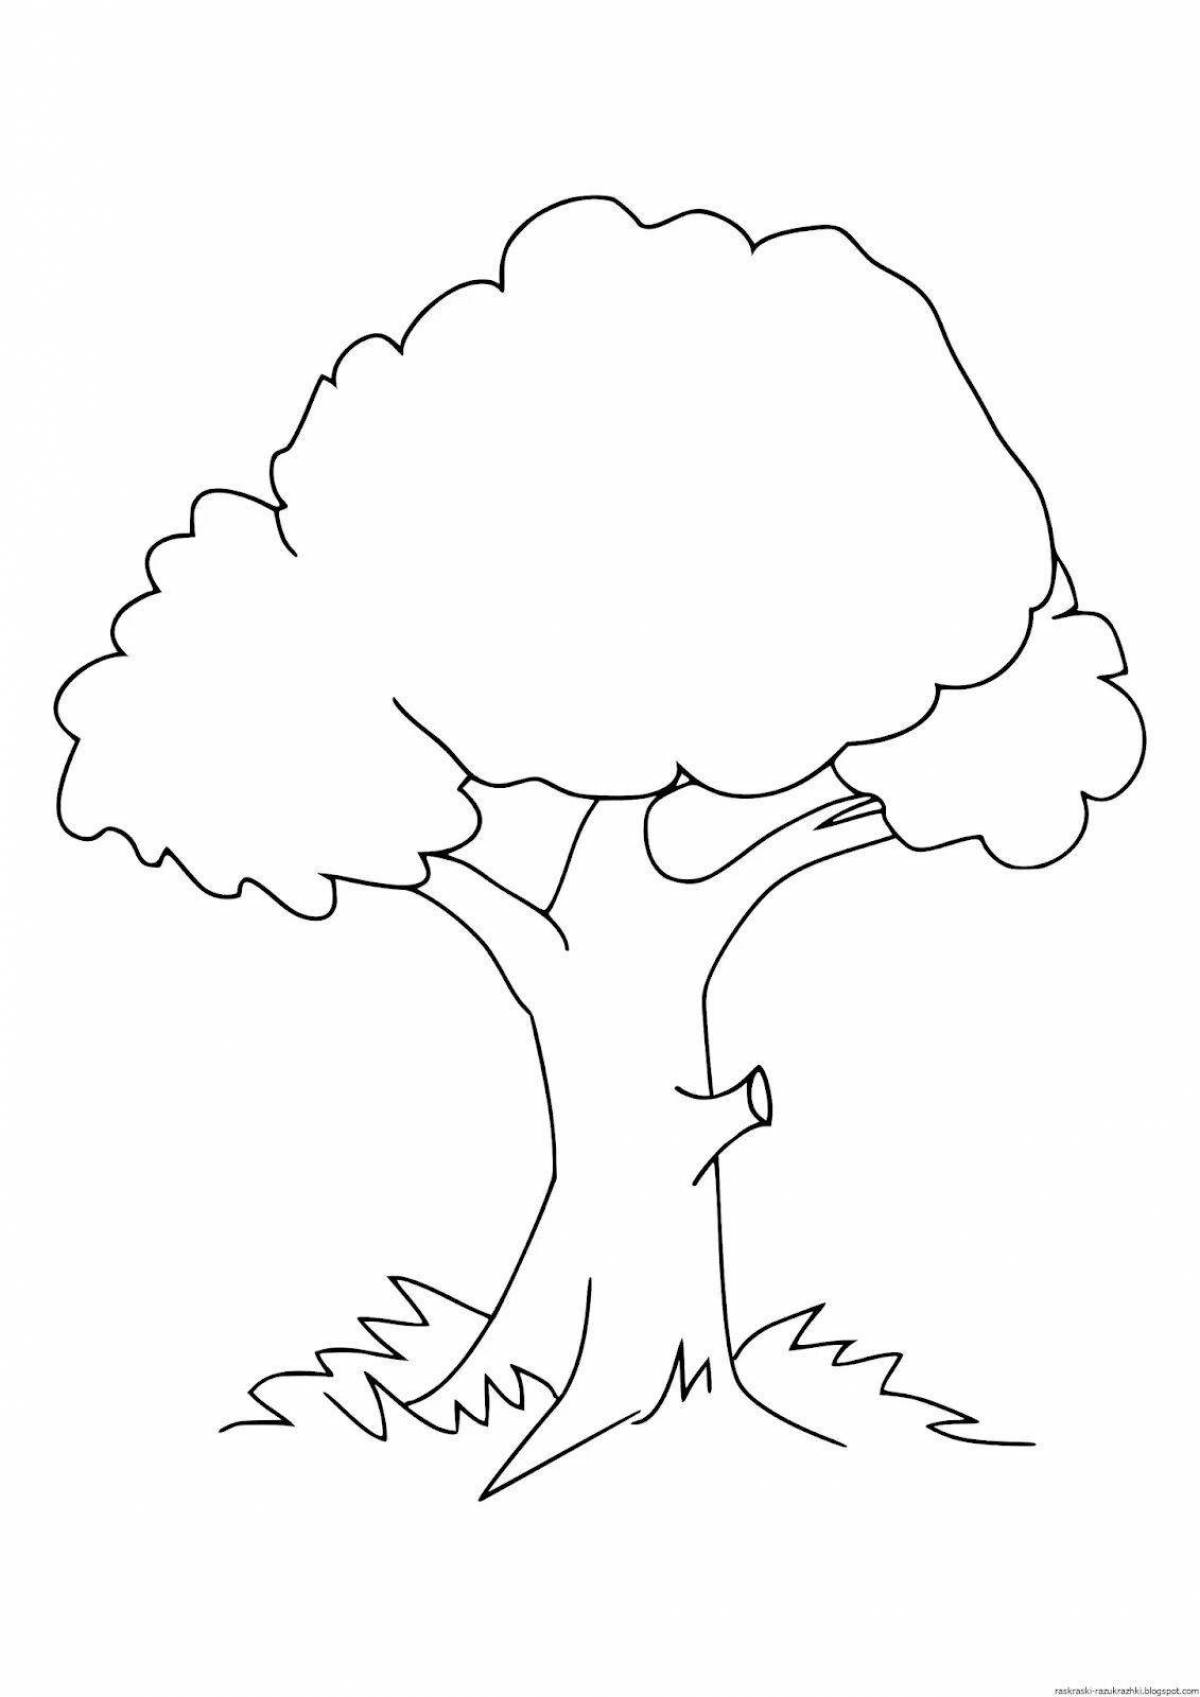 Радостный рисунок дерева для детей